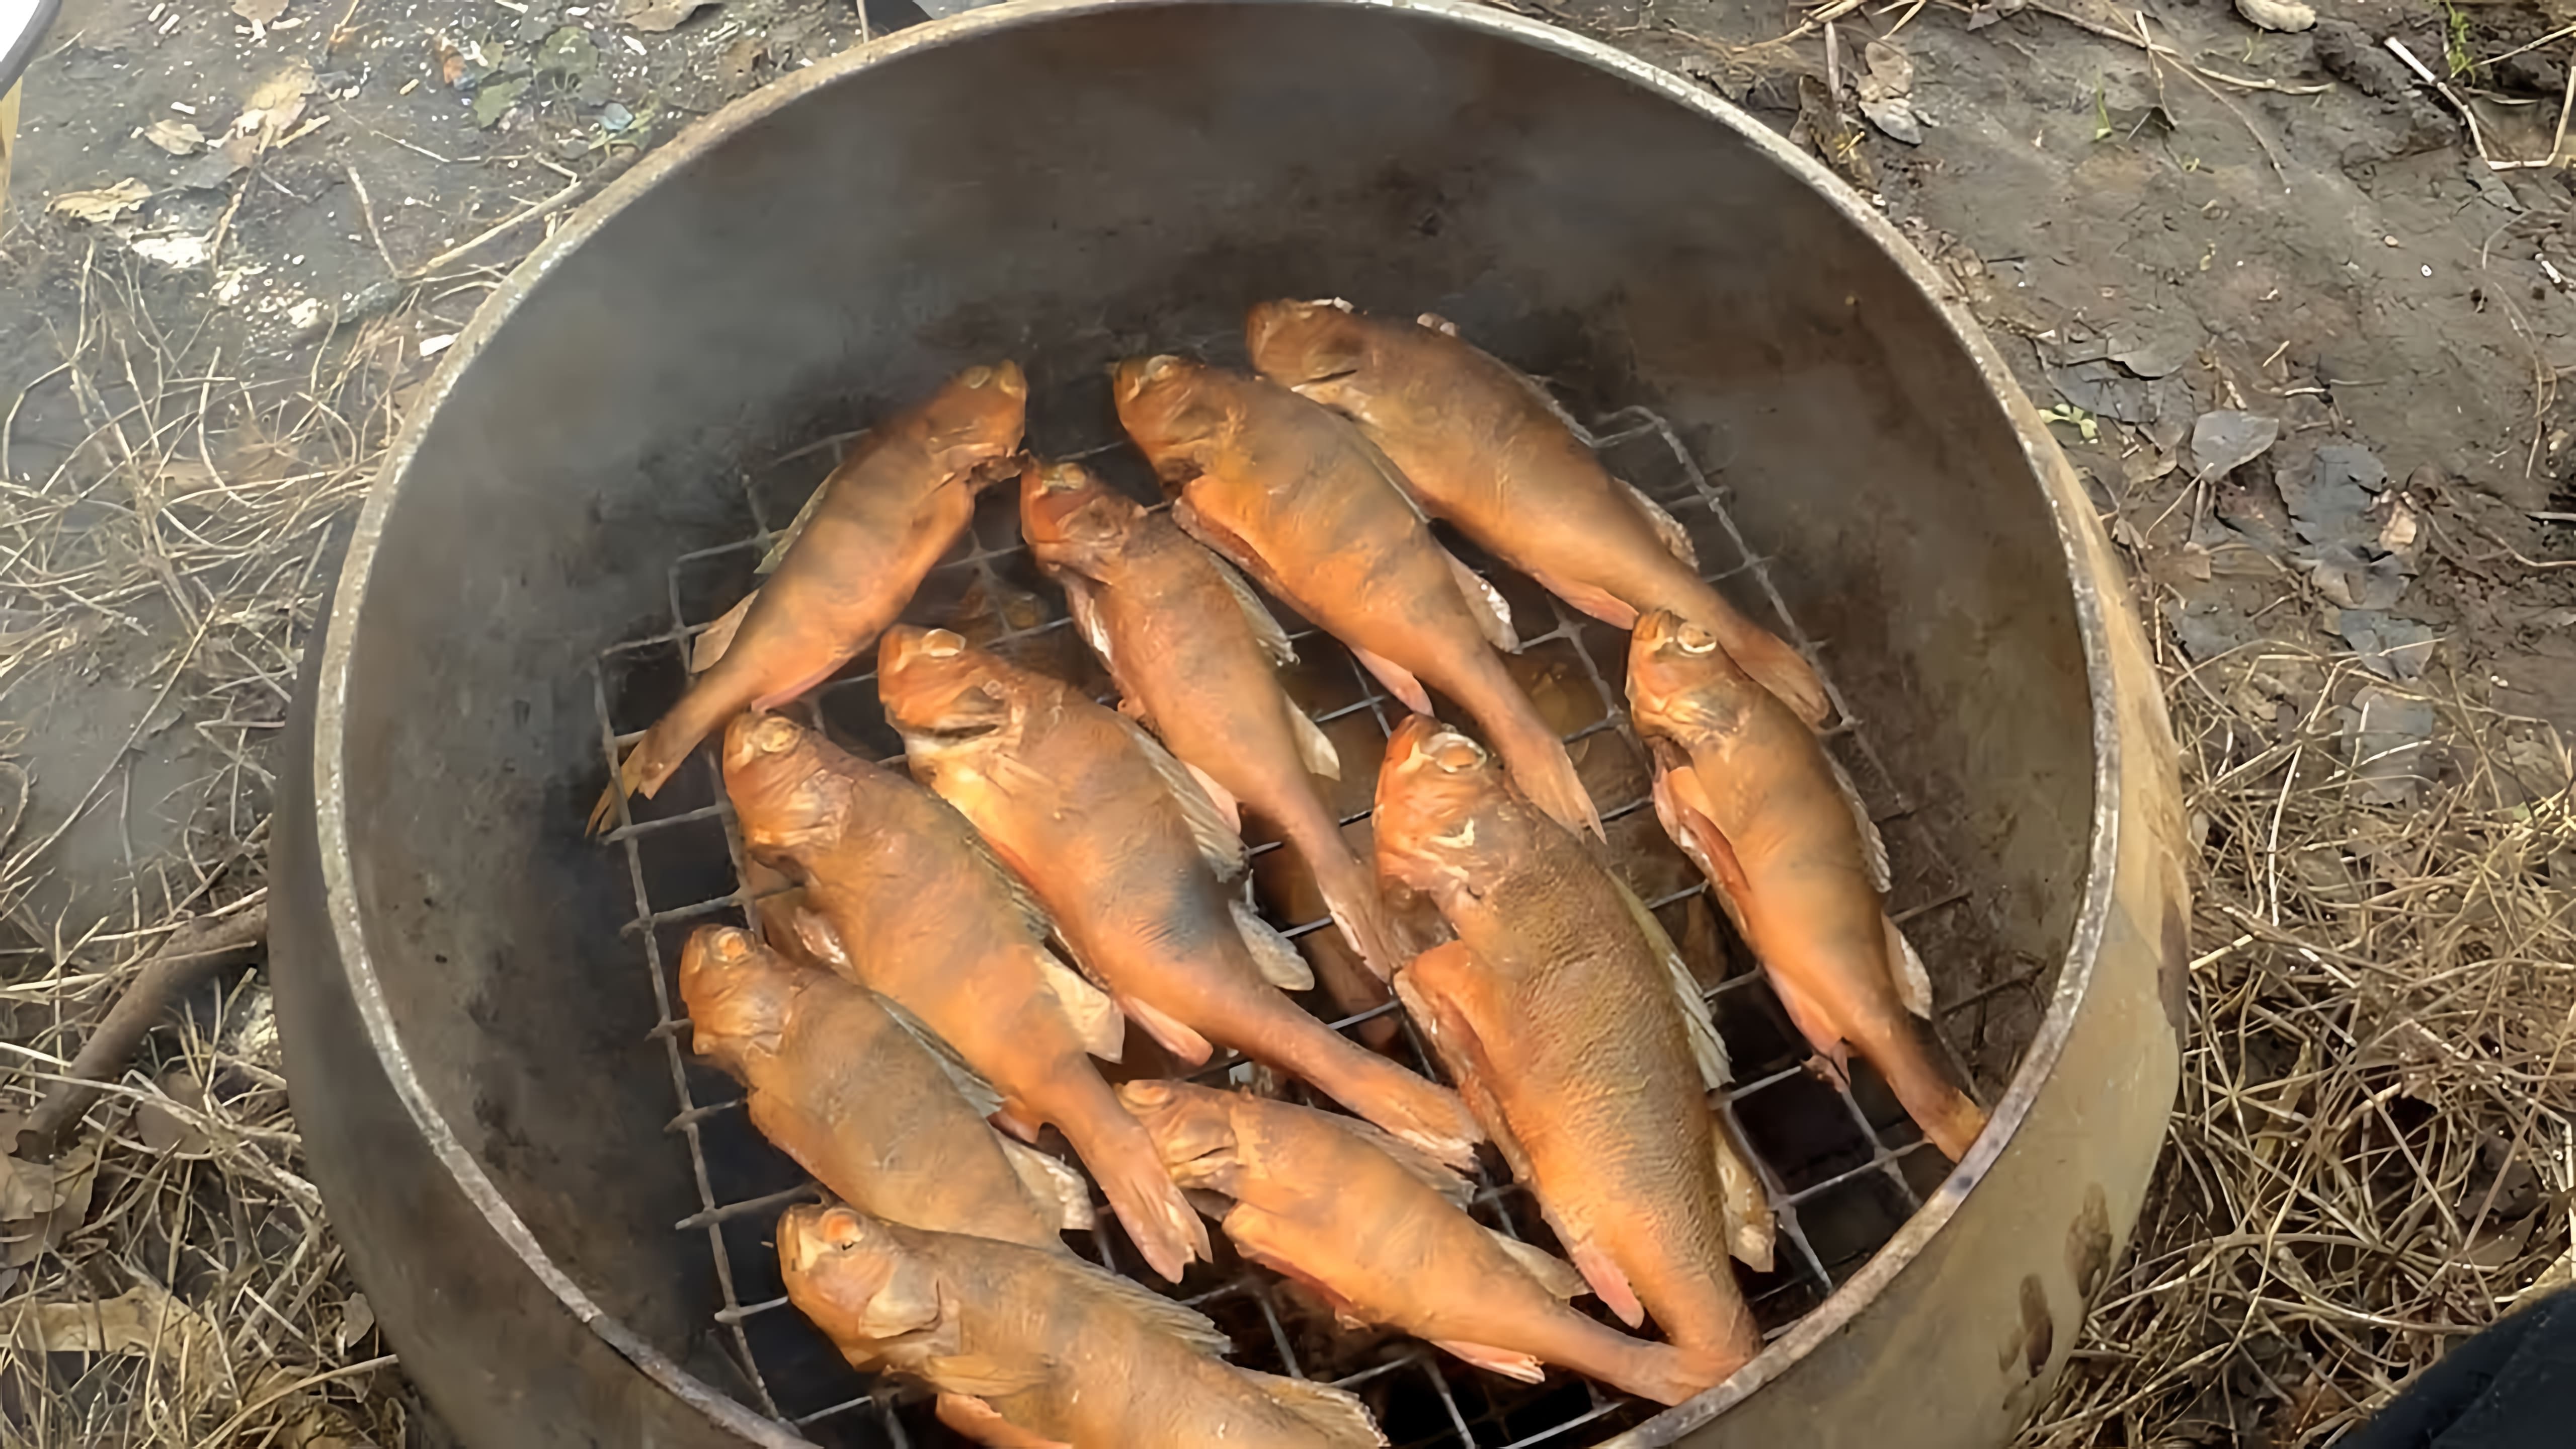 Видео как быстро и легко дома горячим способом коптить рыбу, такую как щука или другие виды